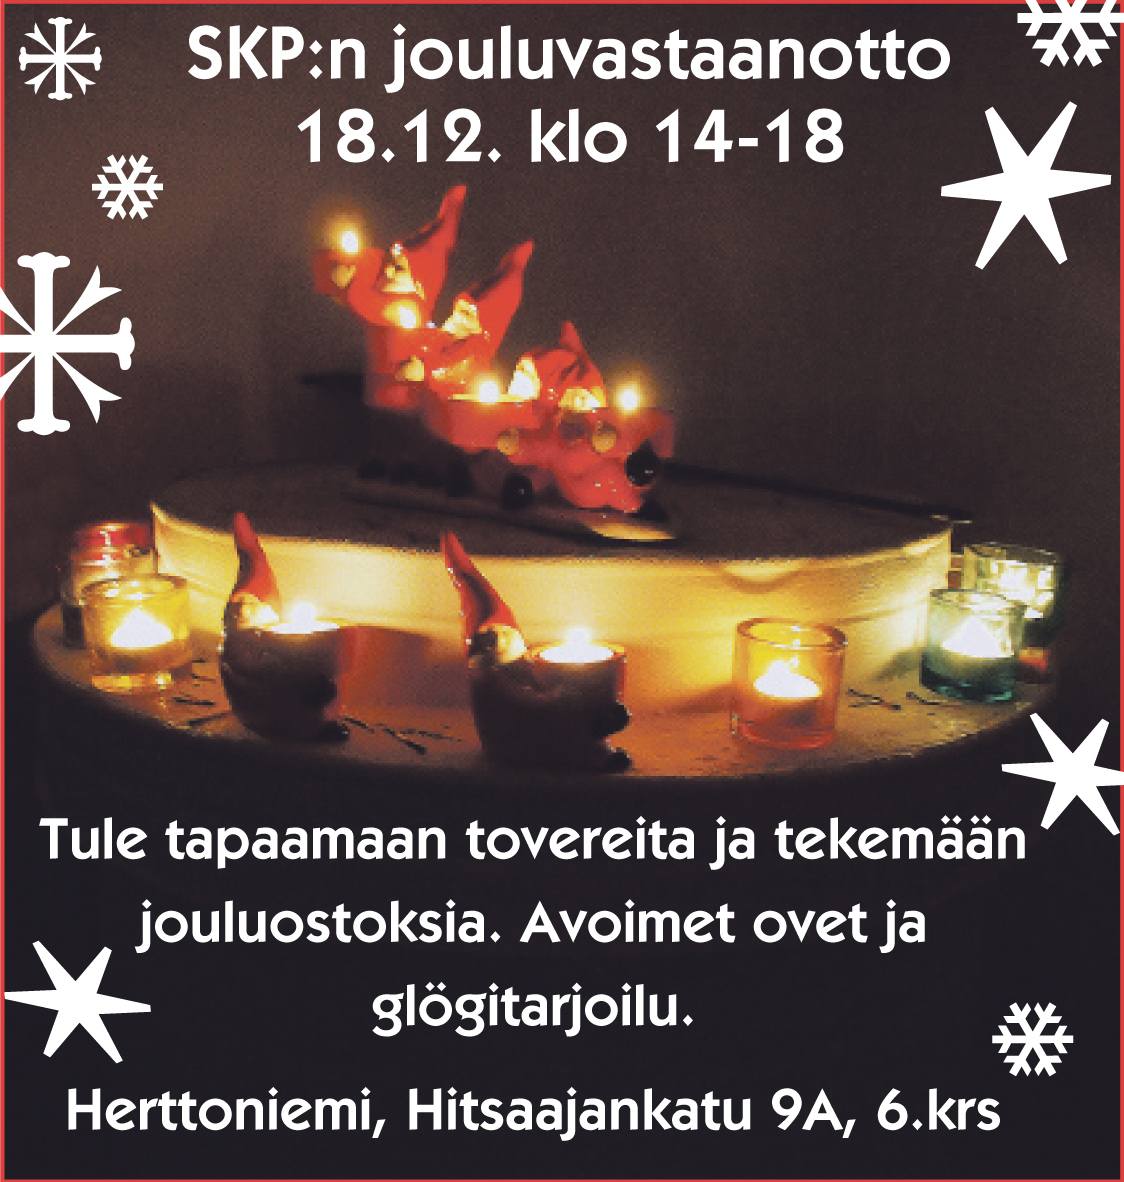 Tervetuloa SKP:n jouluglögeille 18.12. klo 14-18